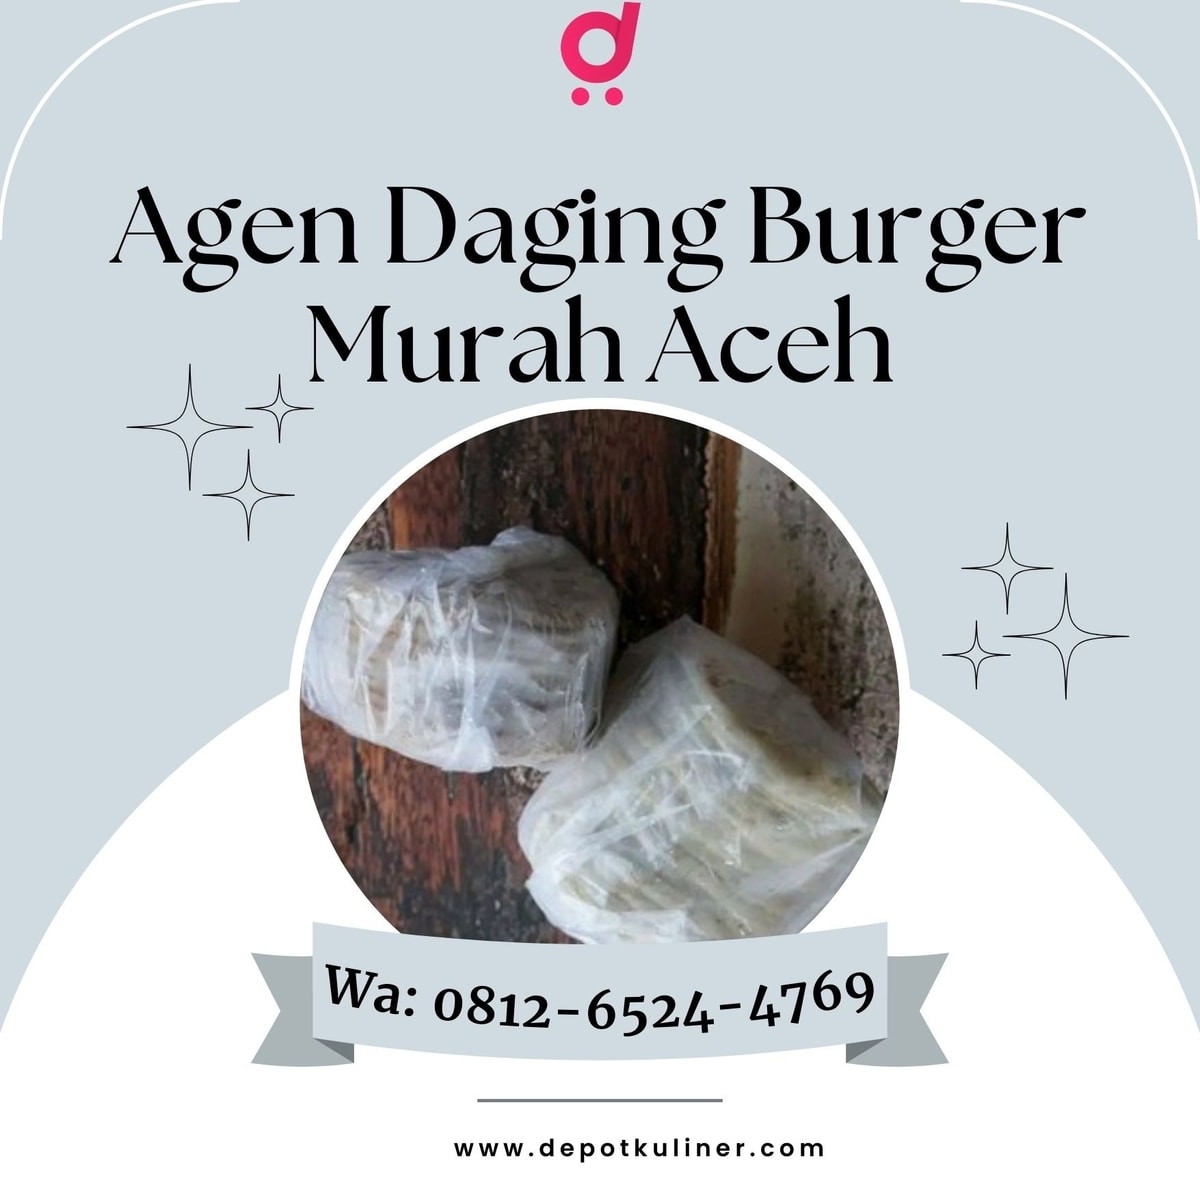 HARGA BERSAHABAT, Call 0812-6524-4769, Agen Daging Burger Murah Aceh